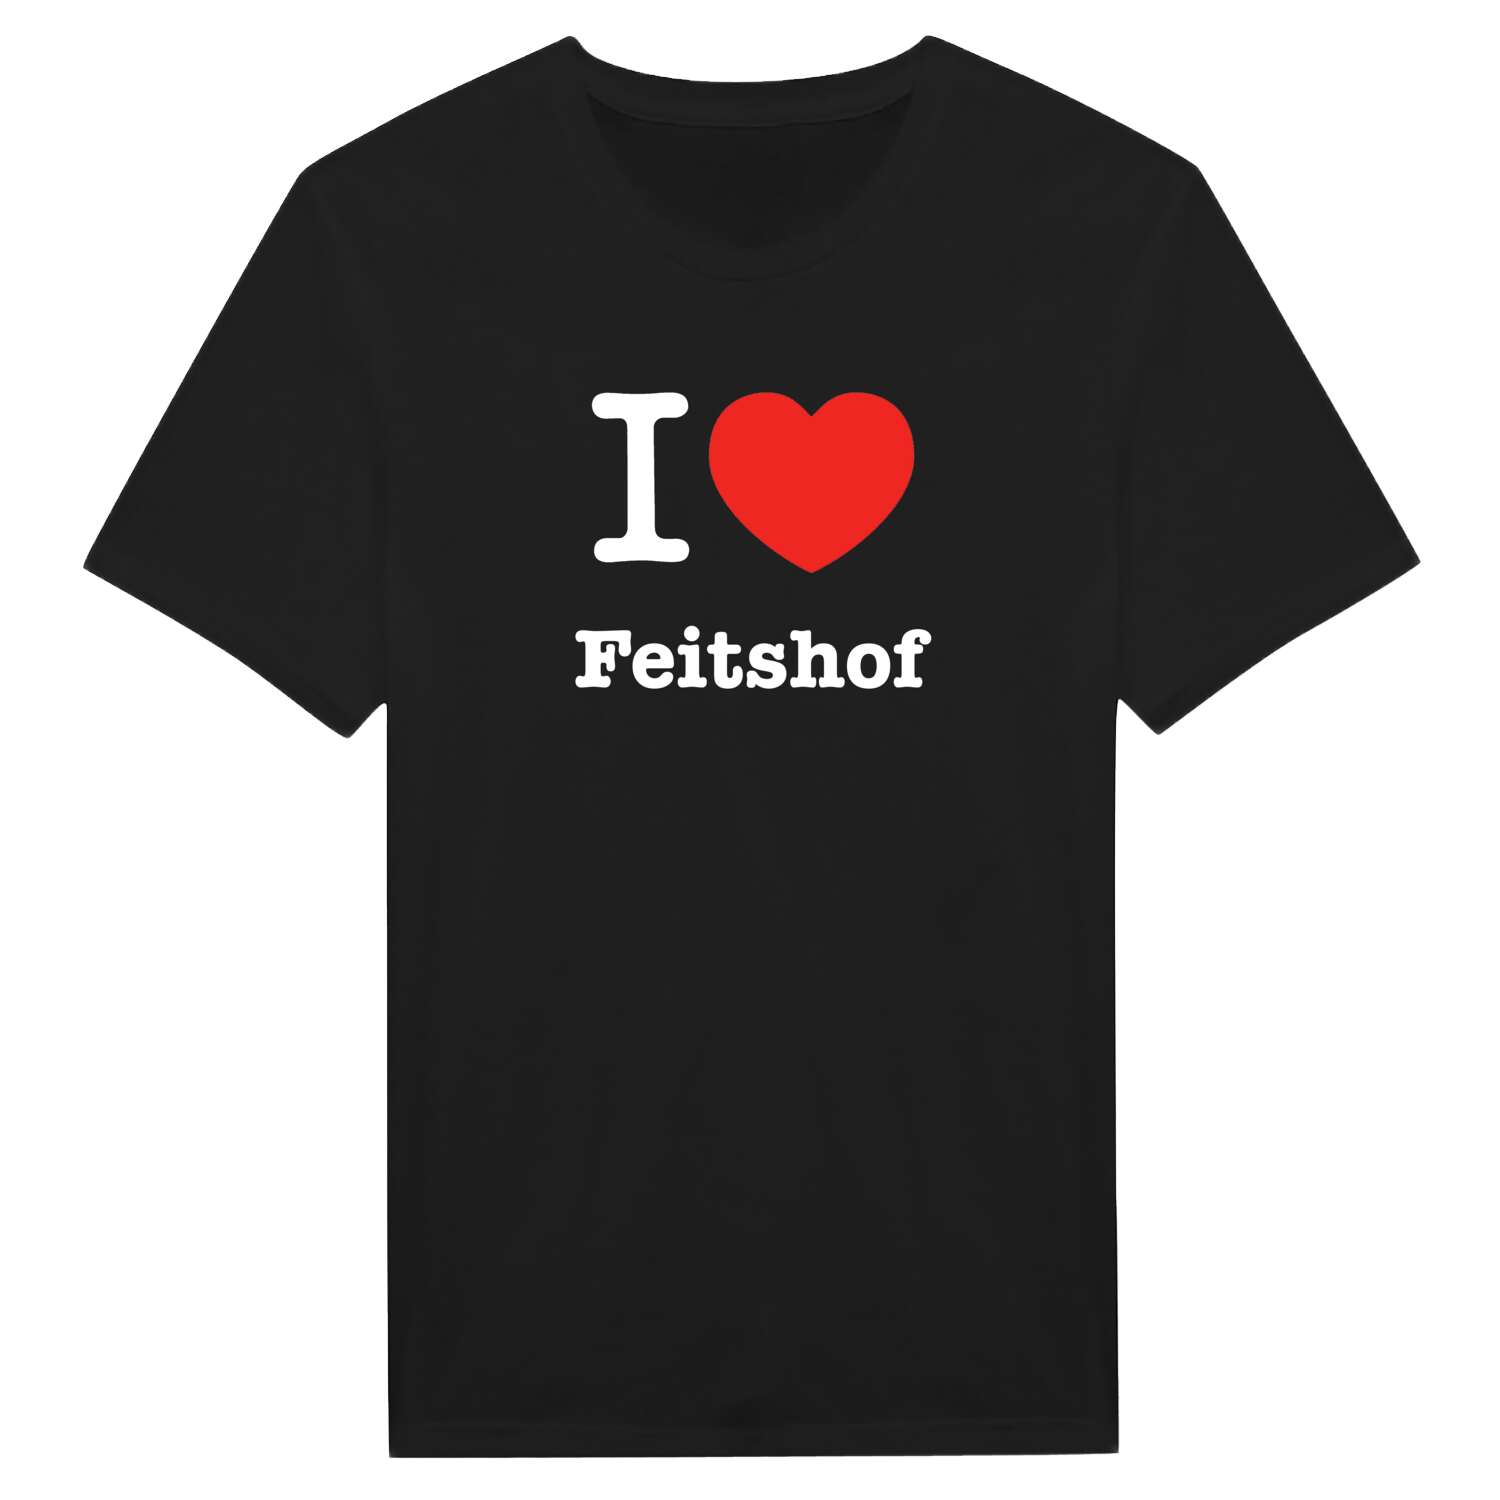 Feitshof T-Shirt »I love«